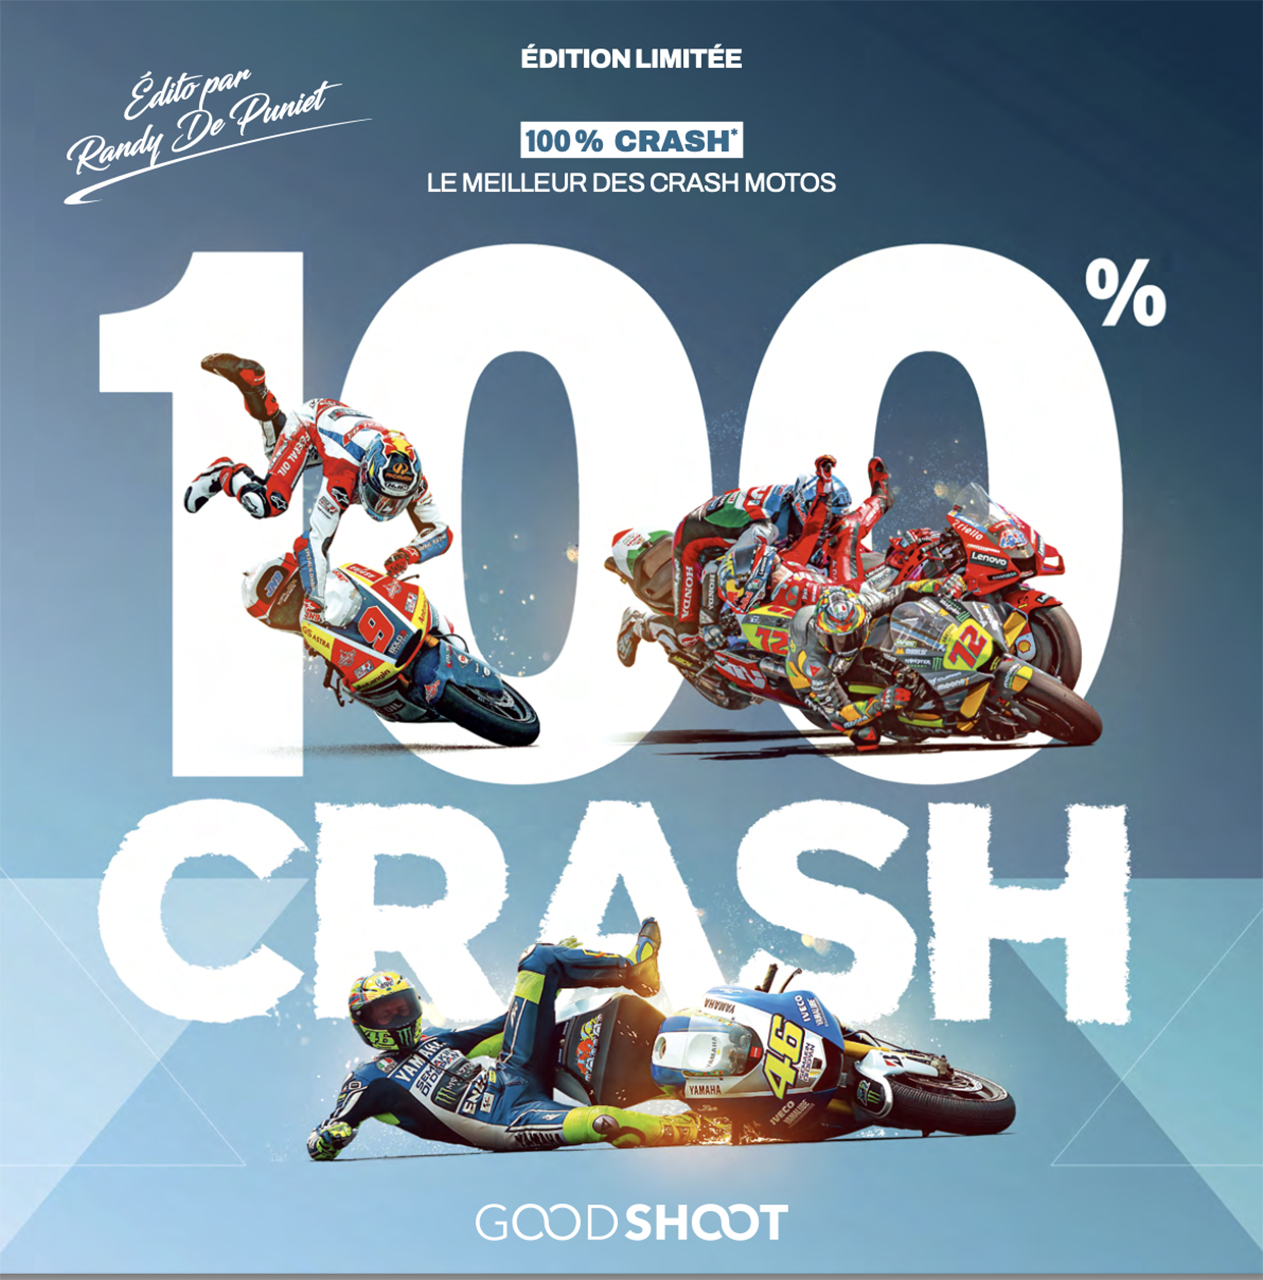 100 % crash